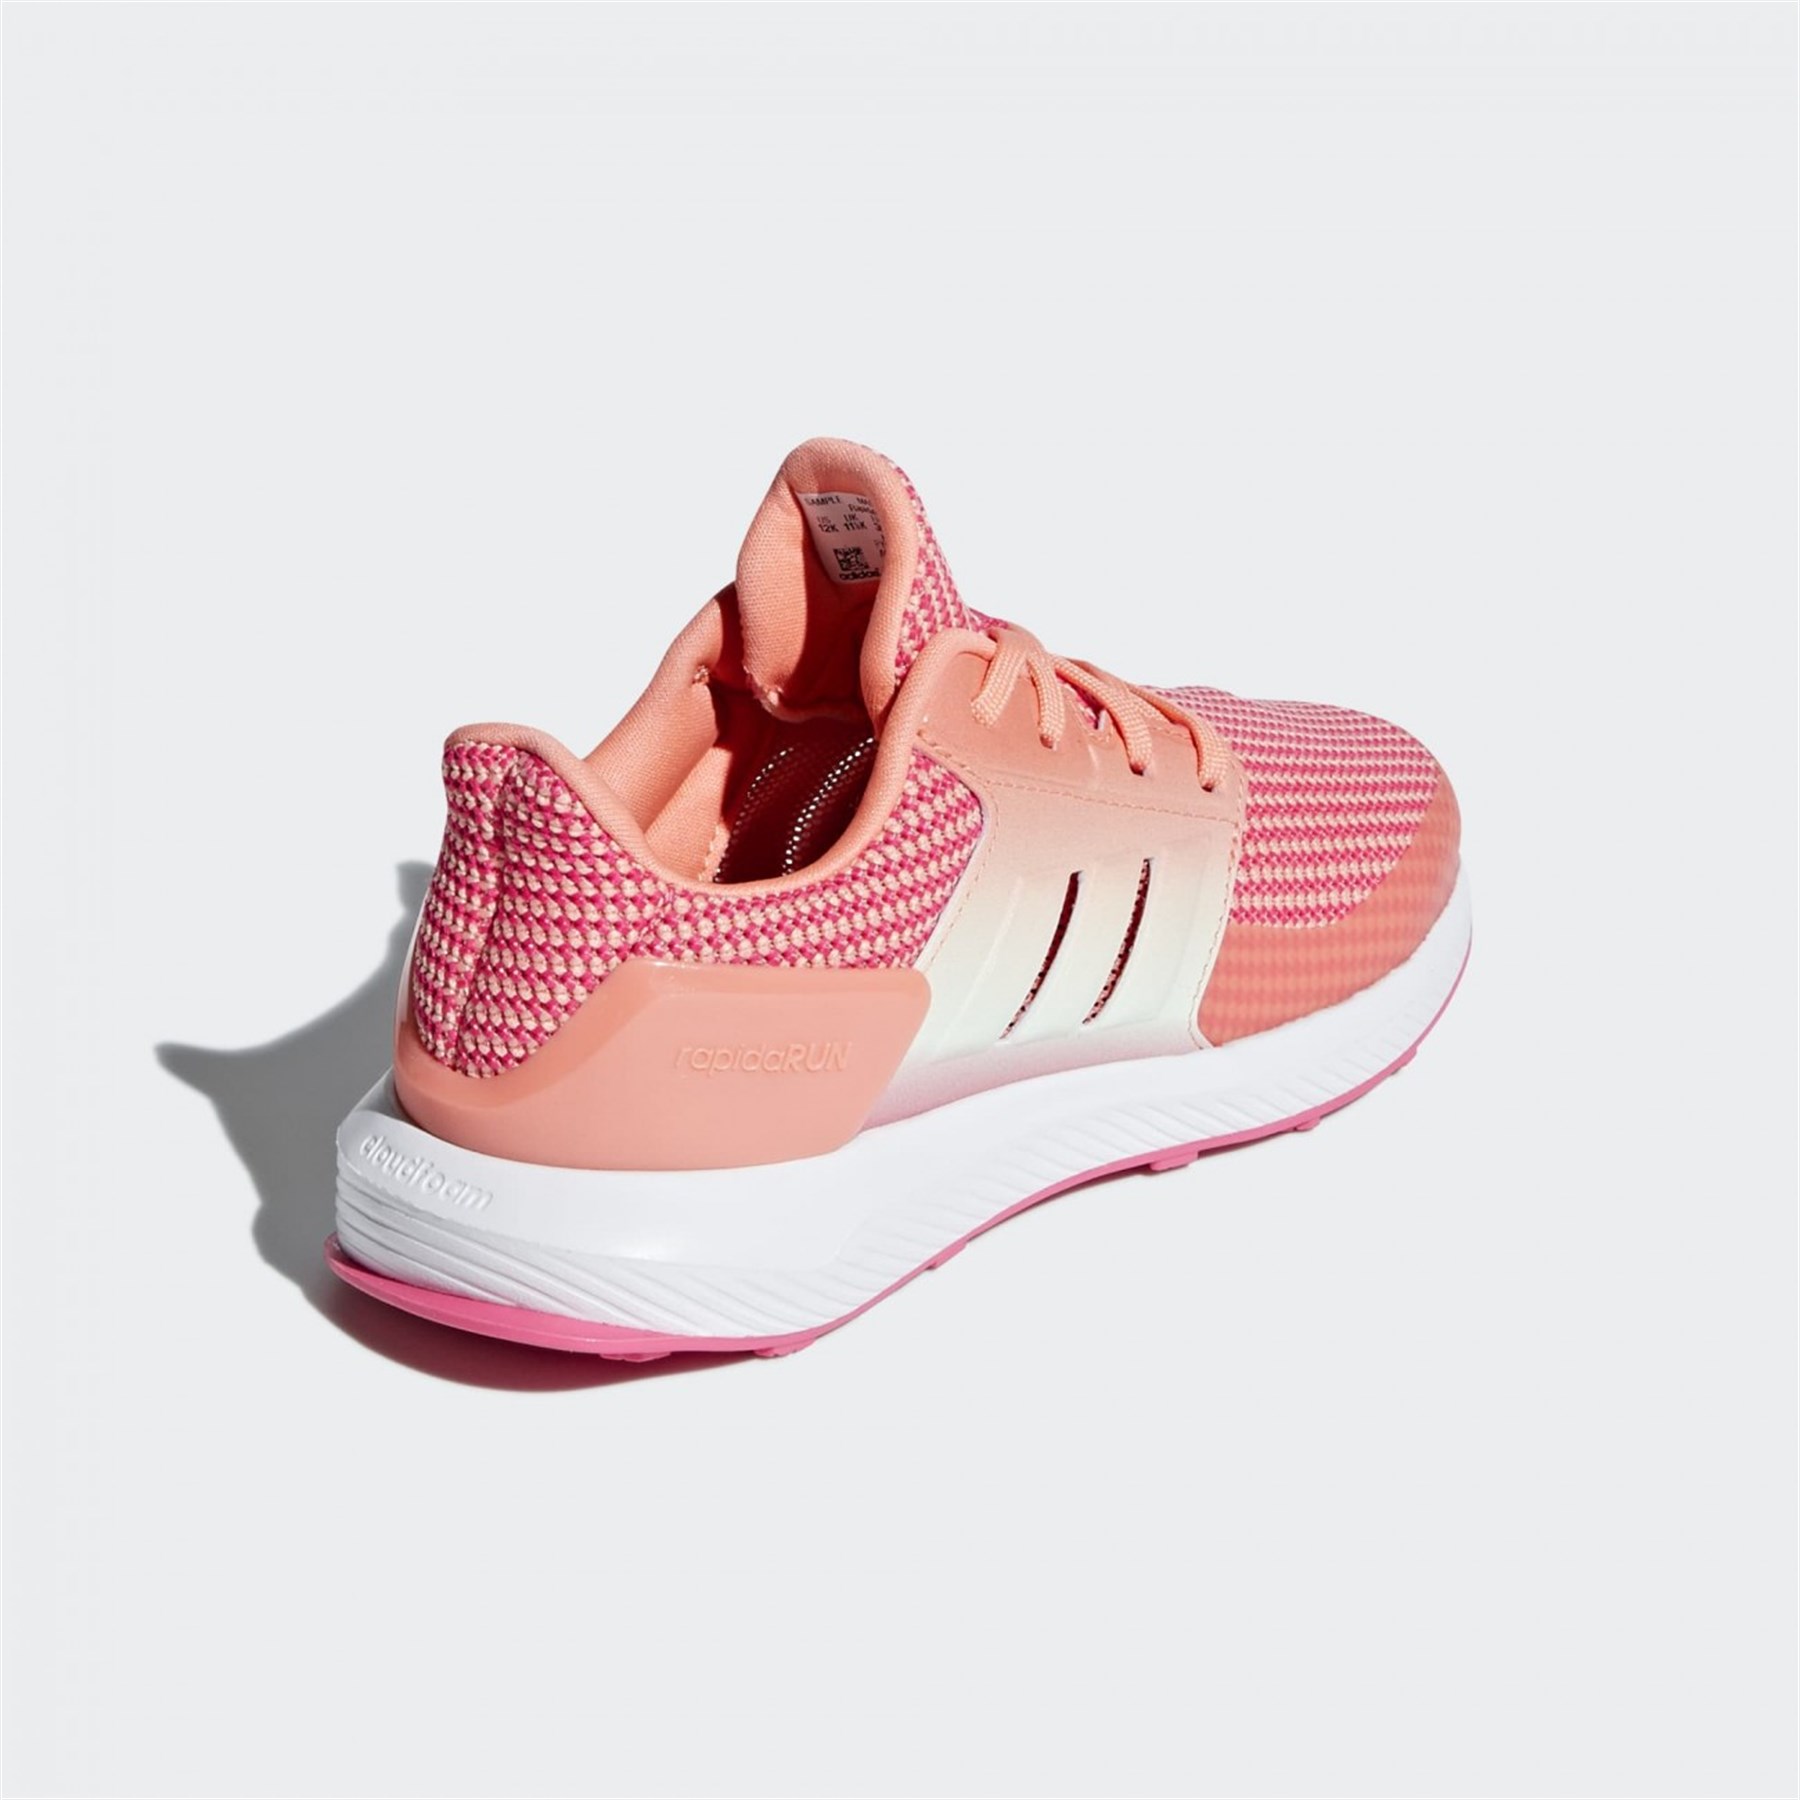 Adidas Çocuk Koşu - Yürüyüş Ayakkabısı Ah2391 Rapidarun K